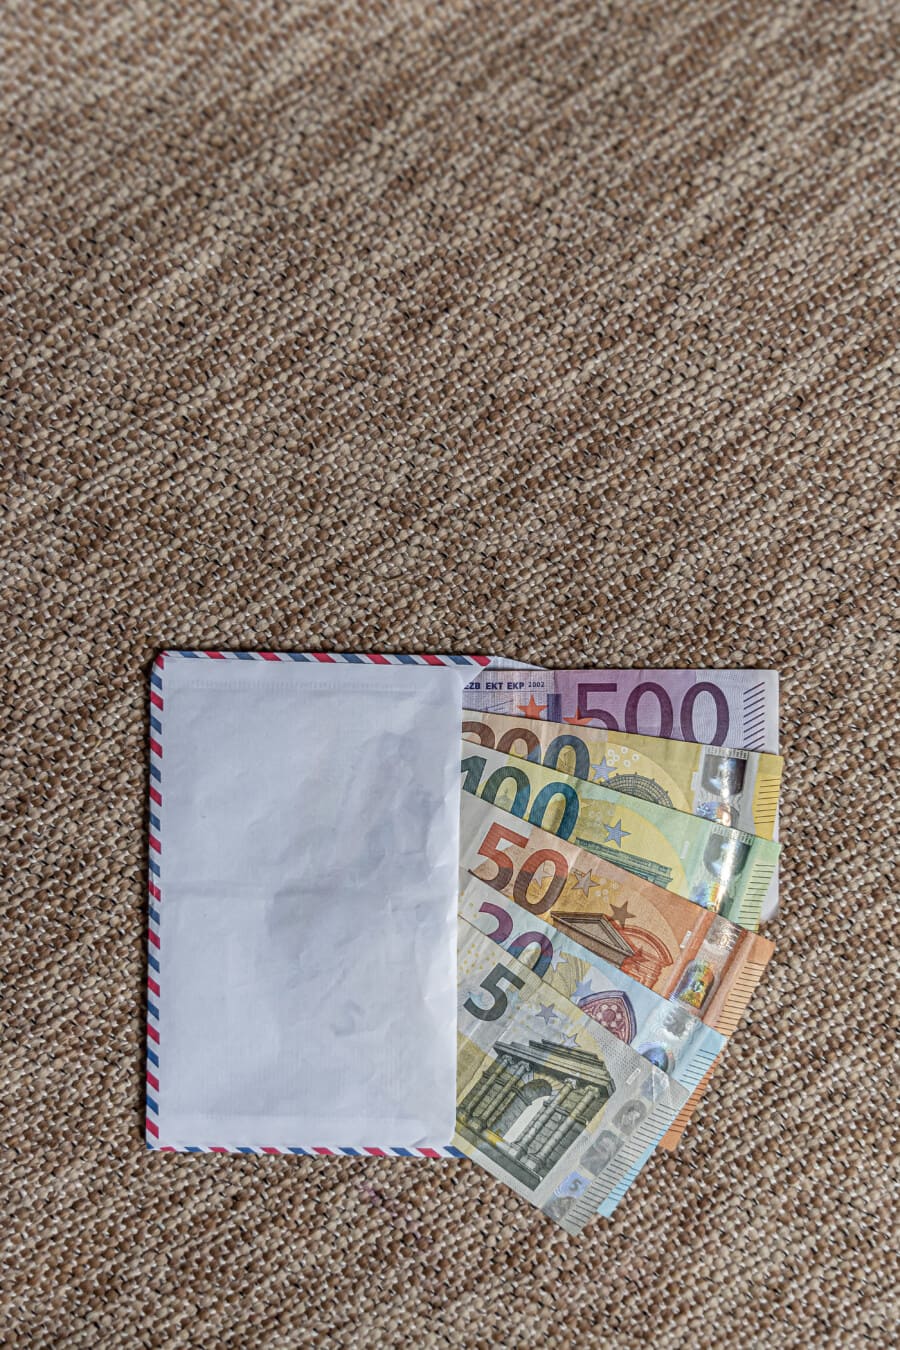 信封装(€5, €20, €50, €100, €200, €500)的欧盟纸币